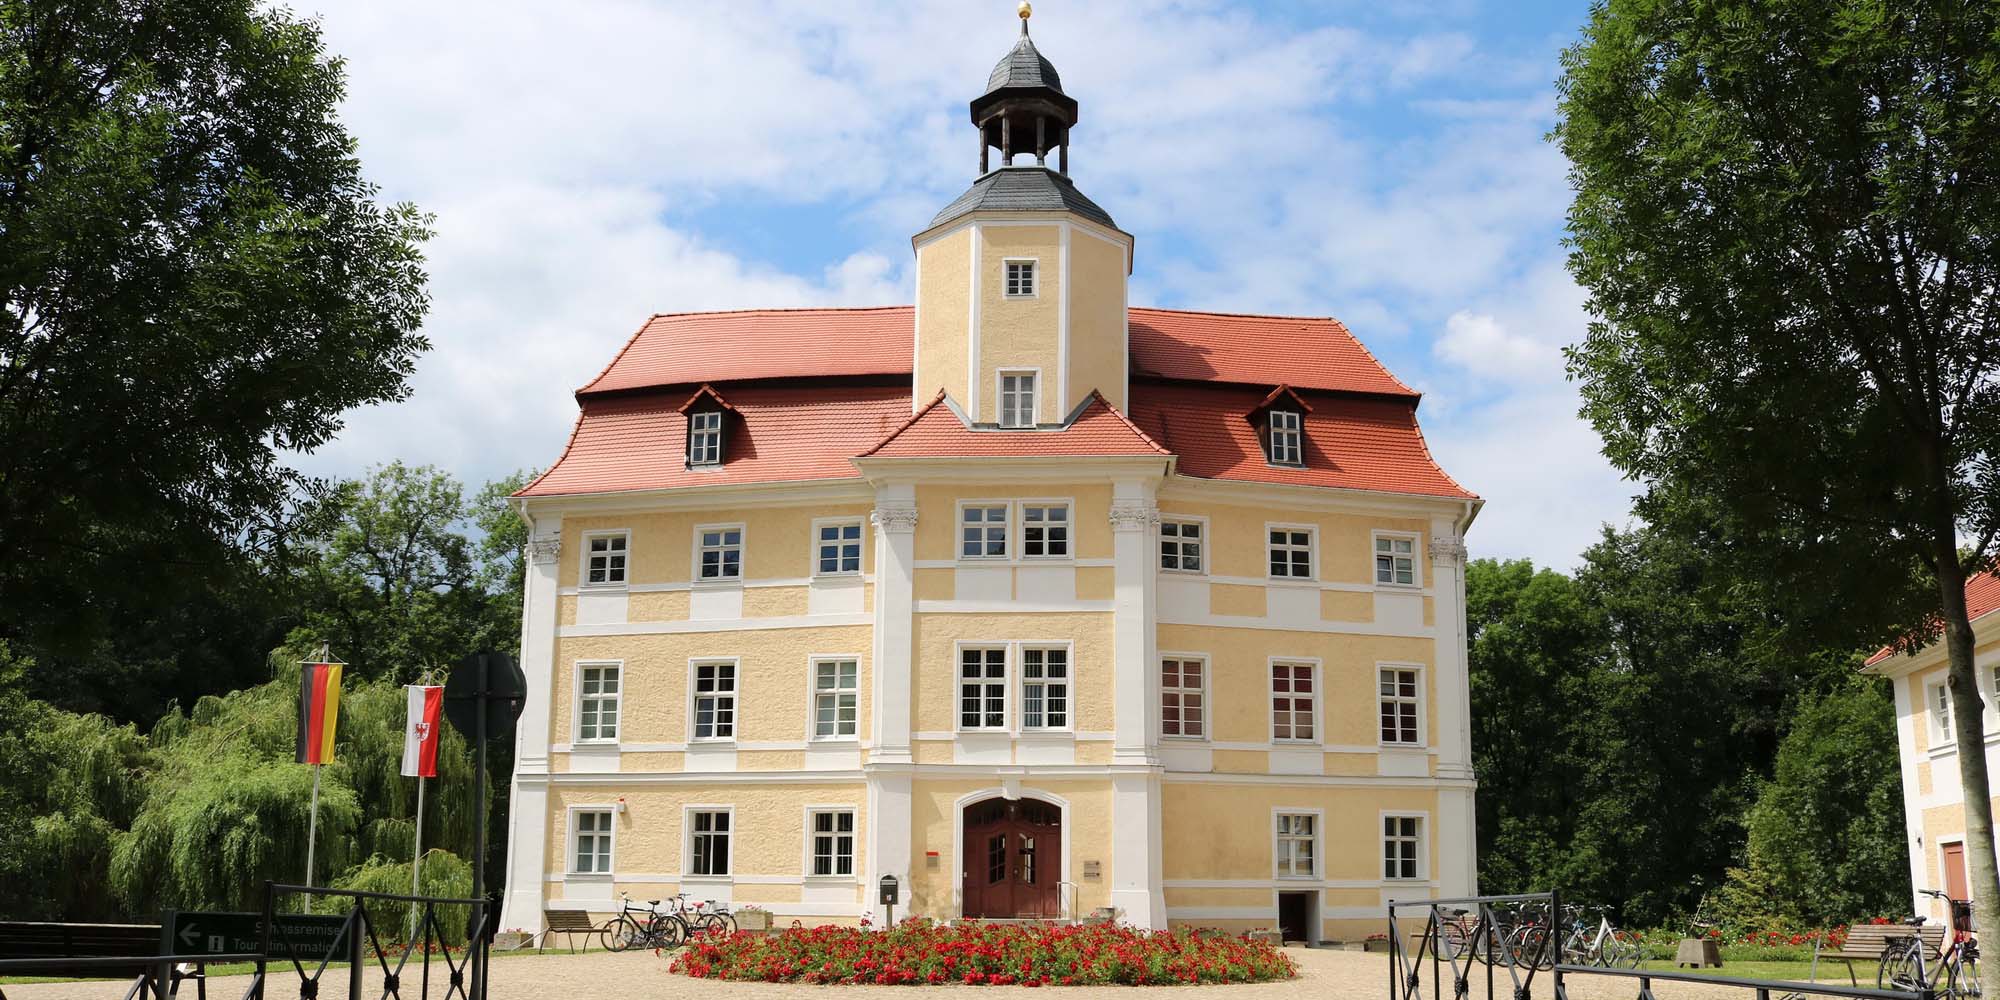 Das Stadtdschloss in Vetschau, ein gelbes Schloss mit ziegeldach und davor ein Blumenbeet